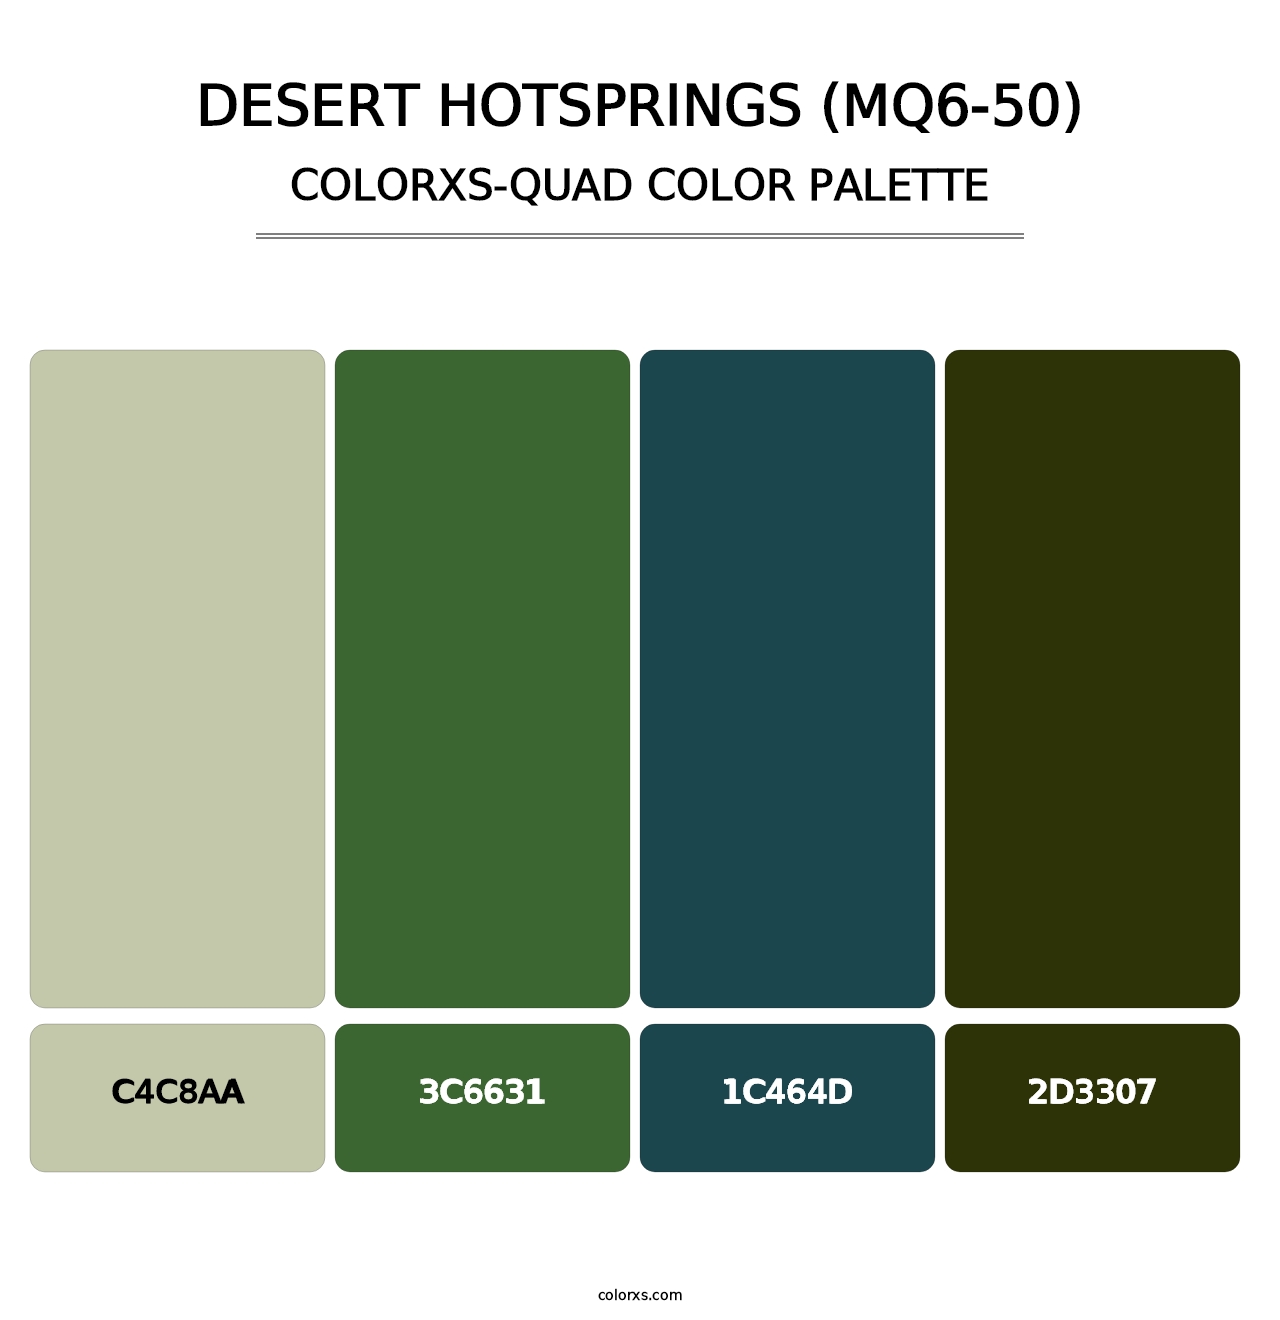 Desert Hotsprings (MQ6-50) - Colorxs Quad Palette